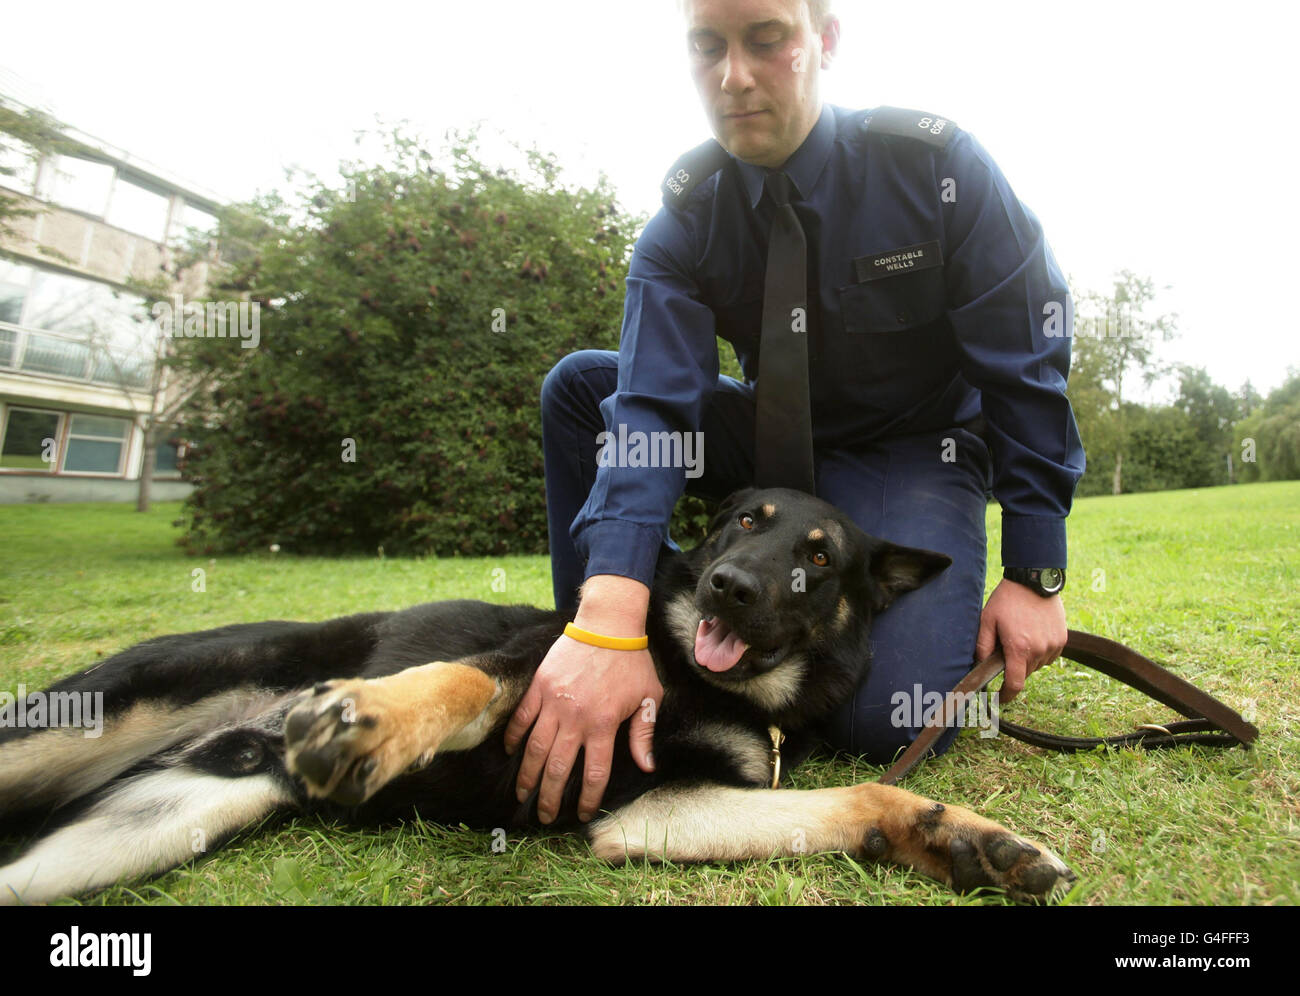 Constable Phil Wells von der Metropolitan Police Dog Support Unit mit dem Polizeihund Obi, einem dreijährigen Schäferhund, der während der Unruhen in Tottenham am Samstag, 6. August, auf der West Drayton Police Station im Westen Londons einen Schädelbruch erlitten hat, als er von einem Ziegelstein getroffen wurde. Stockfoto